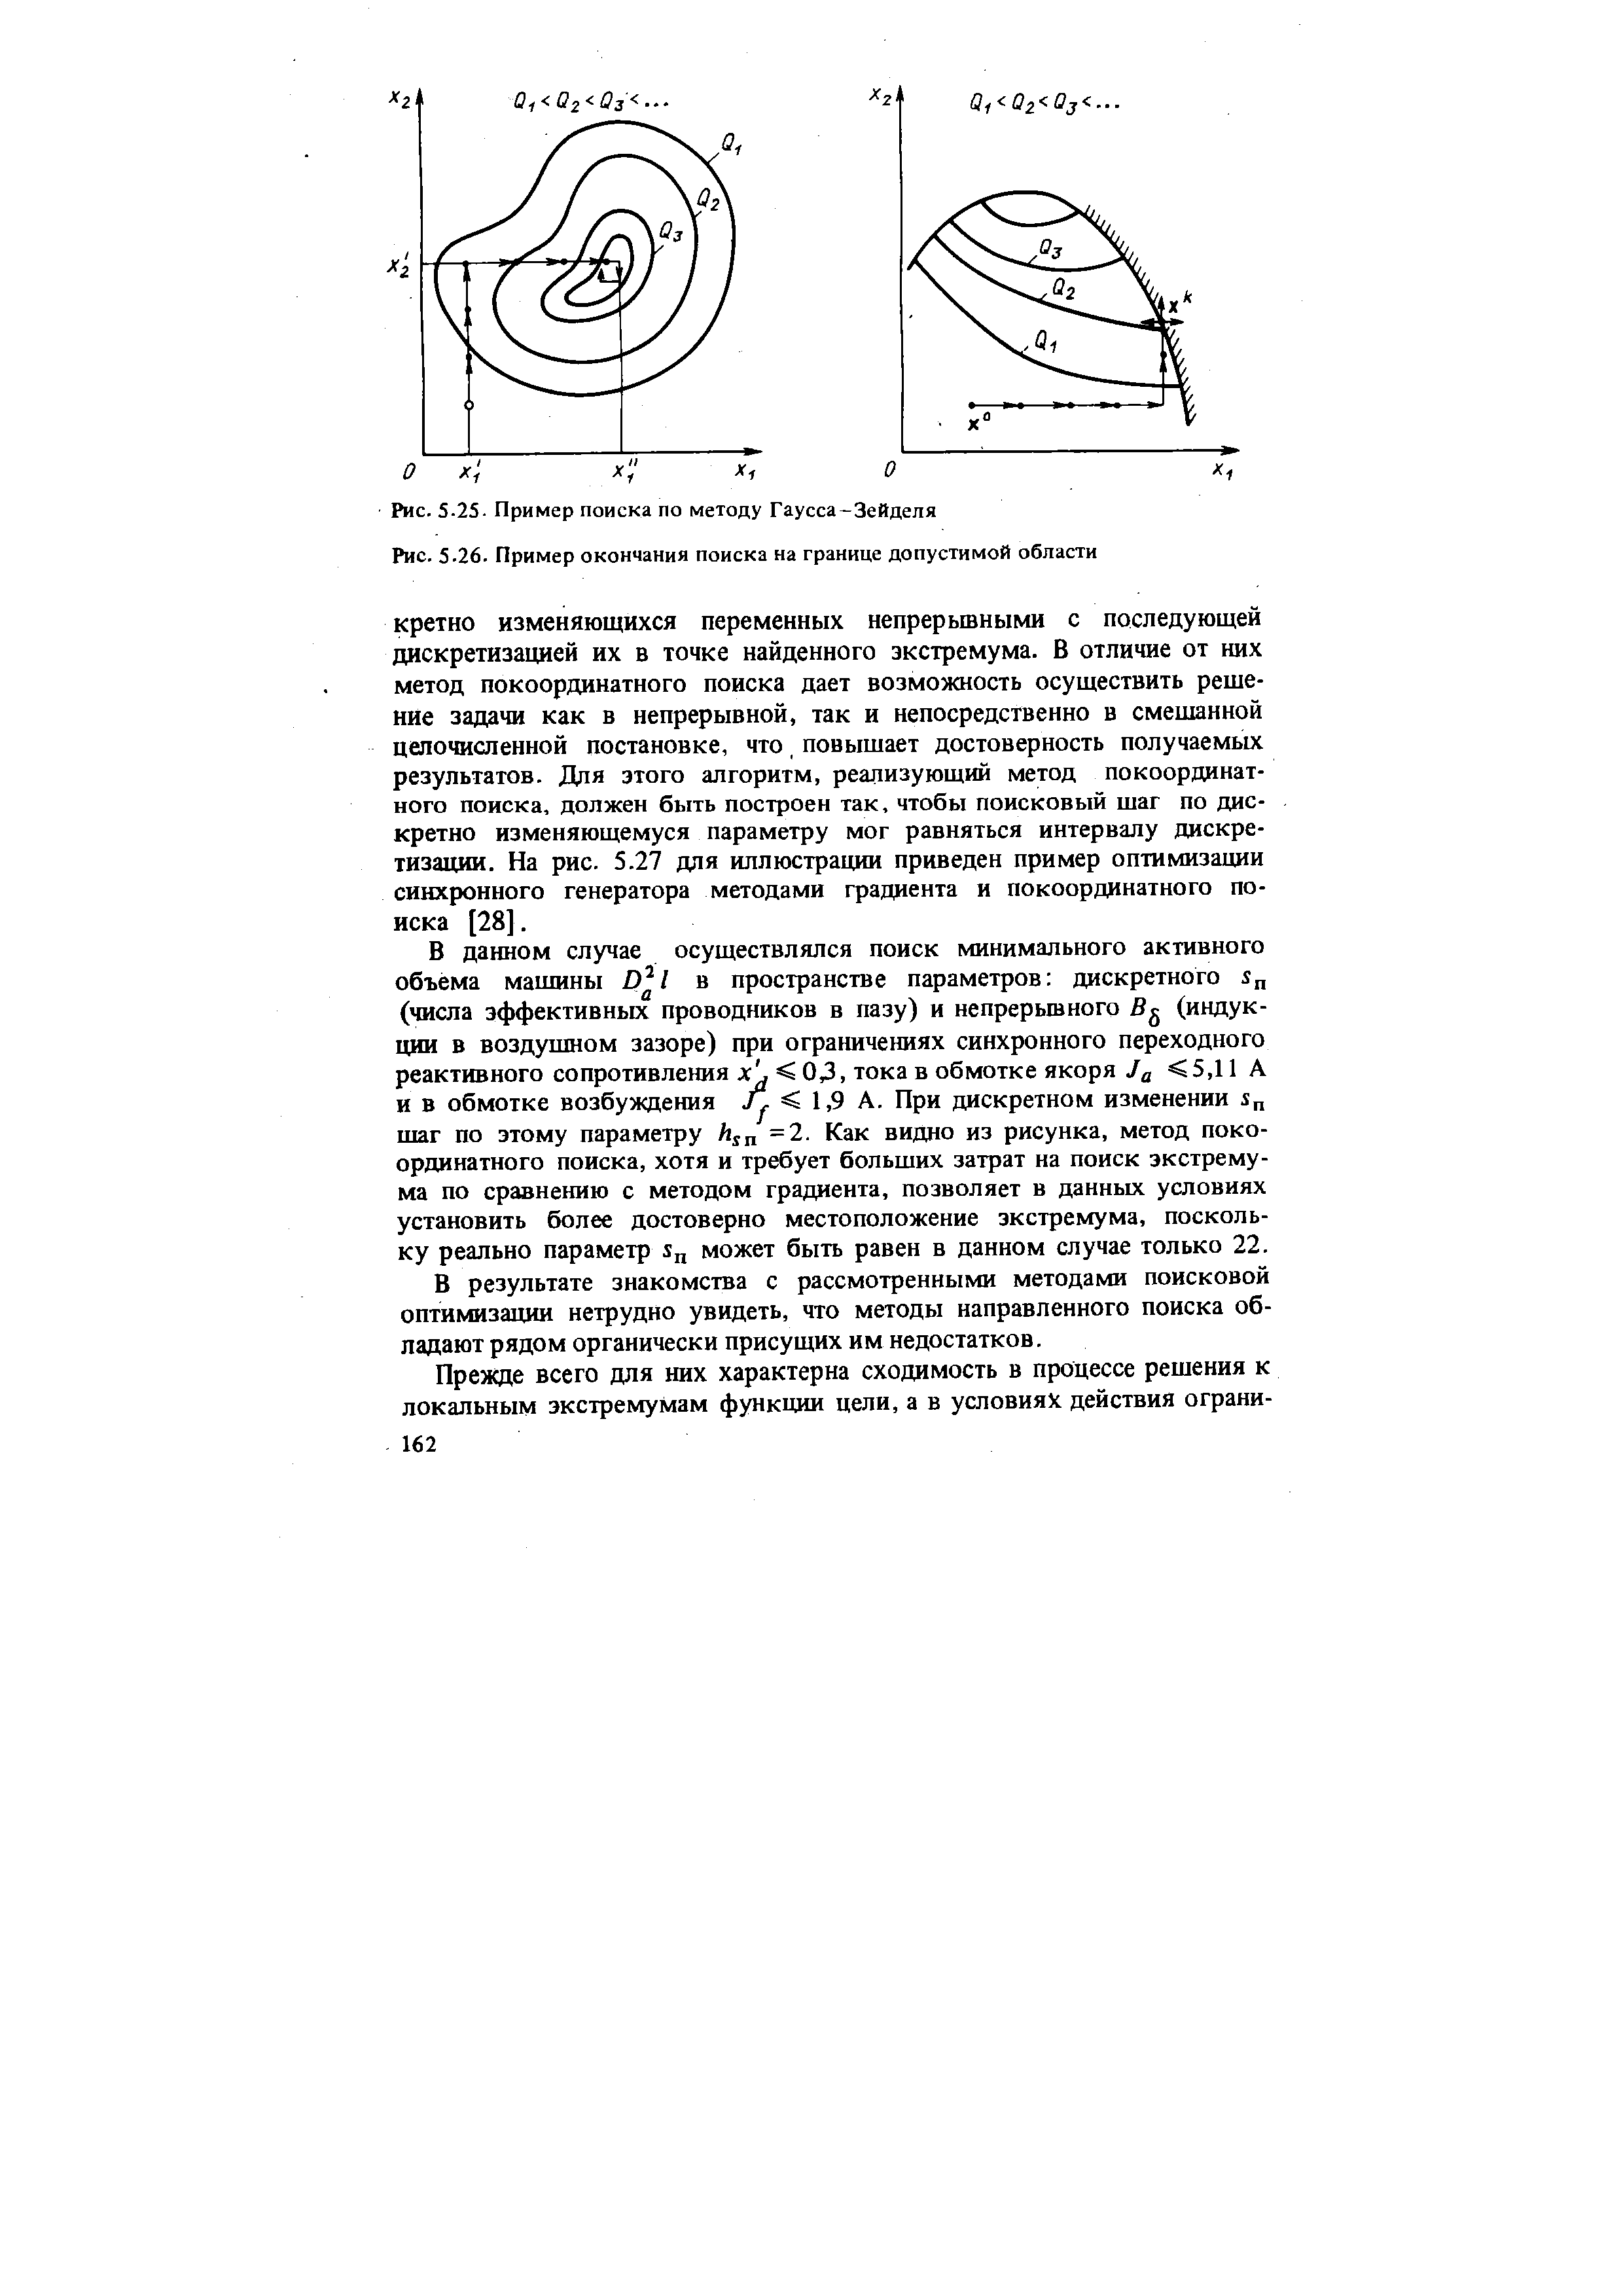 Рис. 5.25. Пример поиска по методу Гаусса-Зейделя
